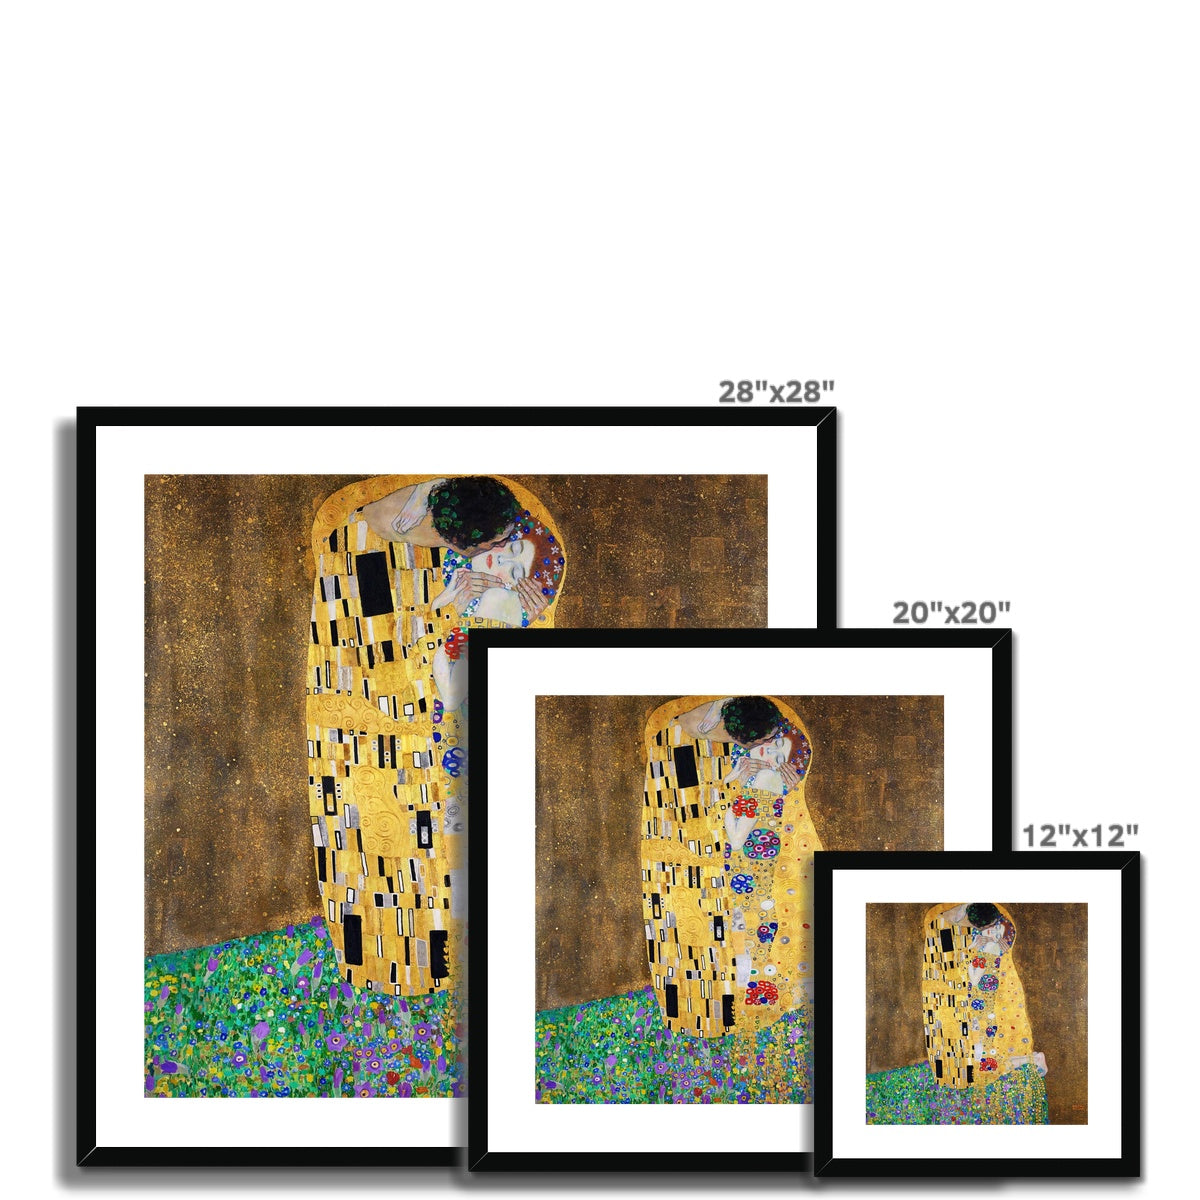 Gustav Klimt Framed Open Edition Art Print. &#39;The Kiss&#39;. Art Gallery Historic Art